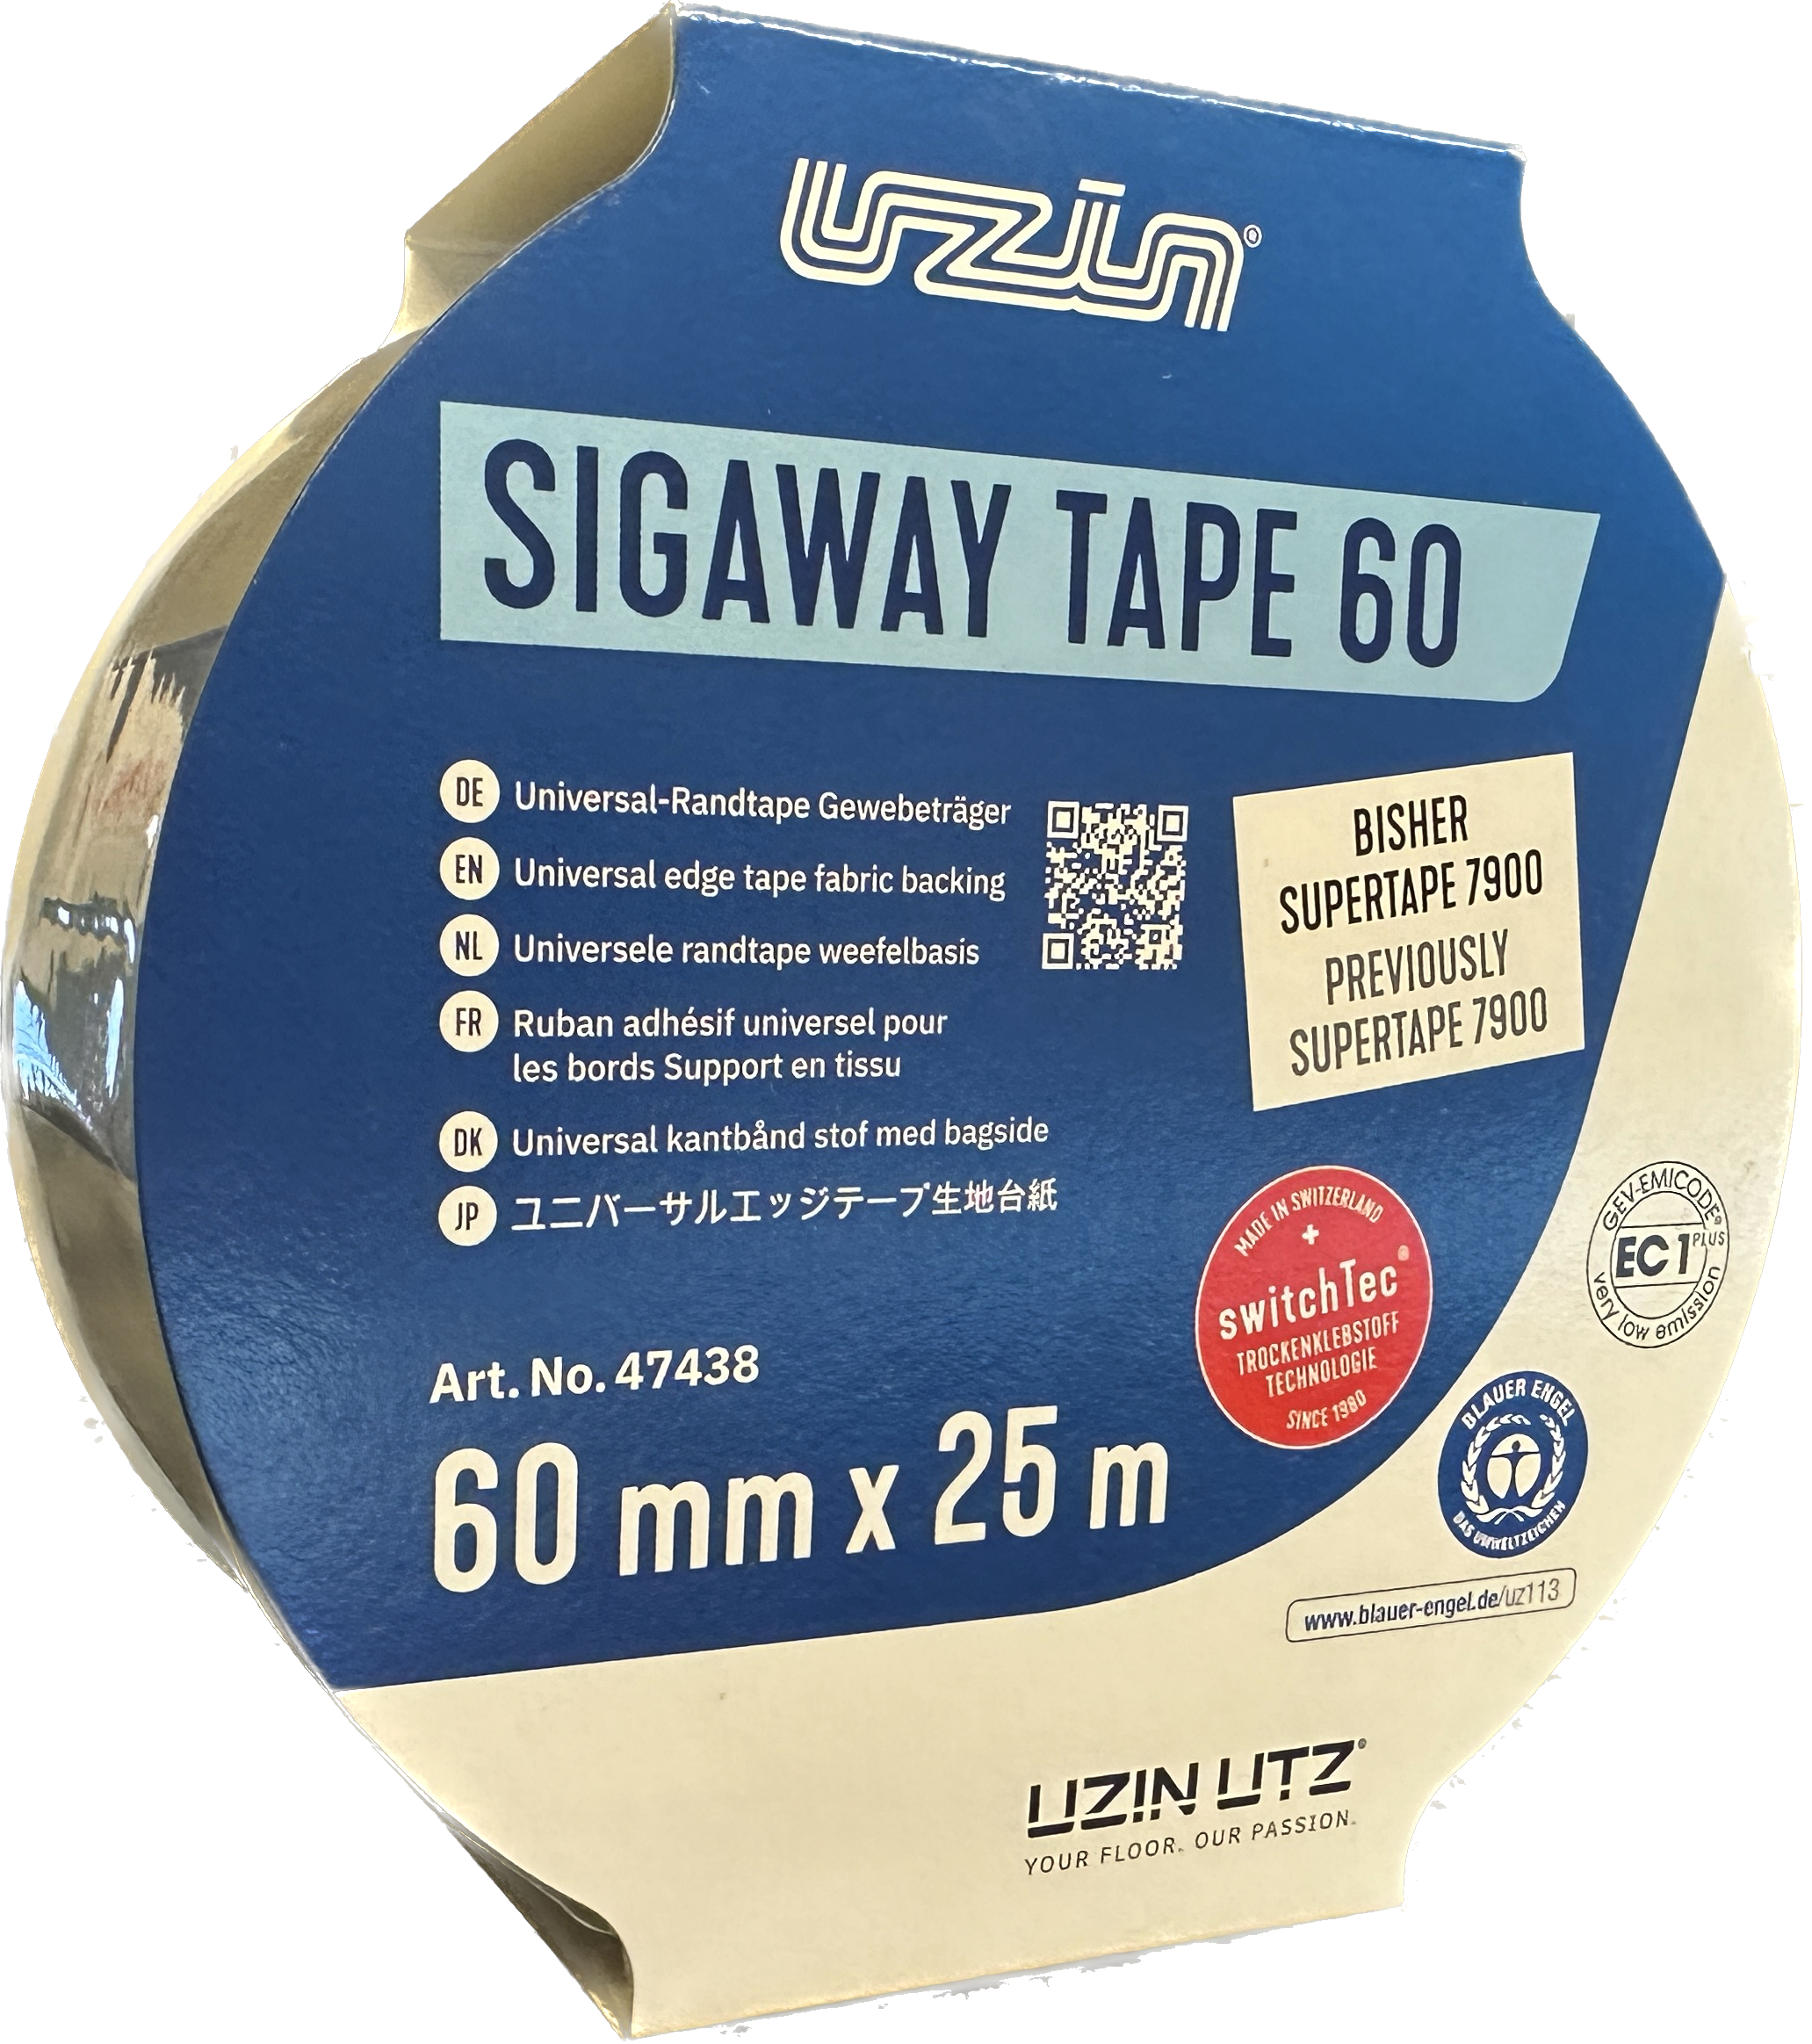 Sigaway Tape 60 (Siga 7900)